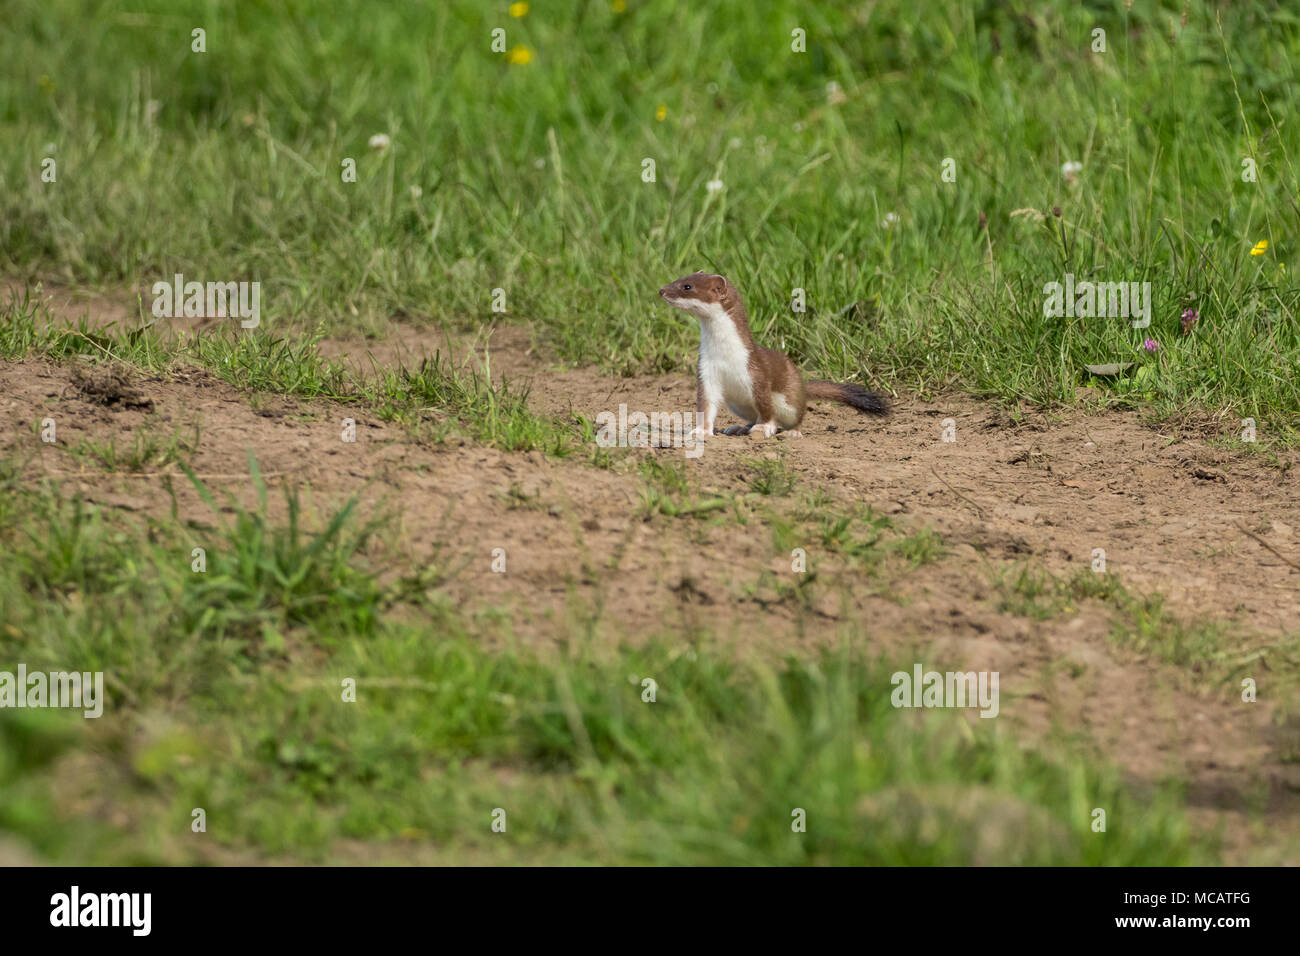 A stoat (UK) on s sandy bank amongst grasses. Stock Photo